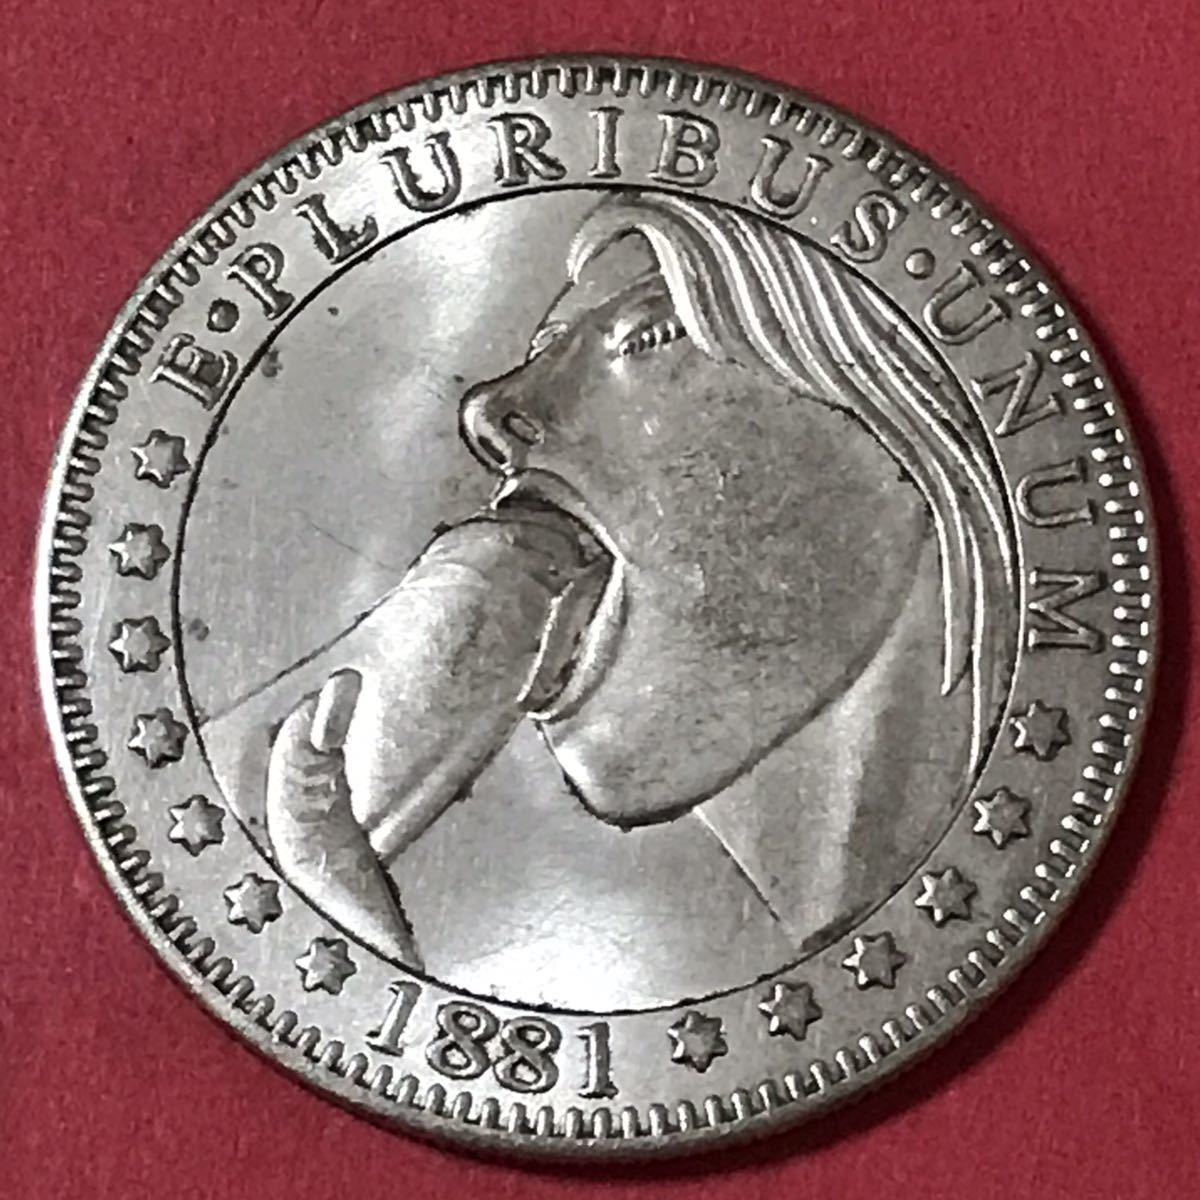 銀貨 1ドル モルガン アメリカ 古錢 一円銀貨 硬貨 貿易銀 古銭 大型銀貨 の画像1